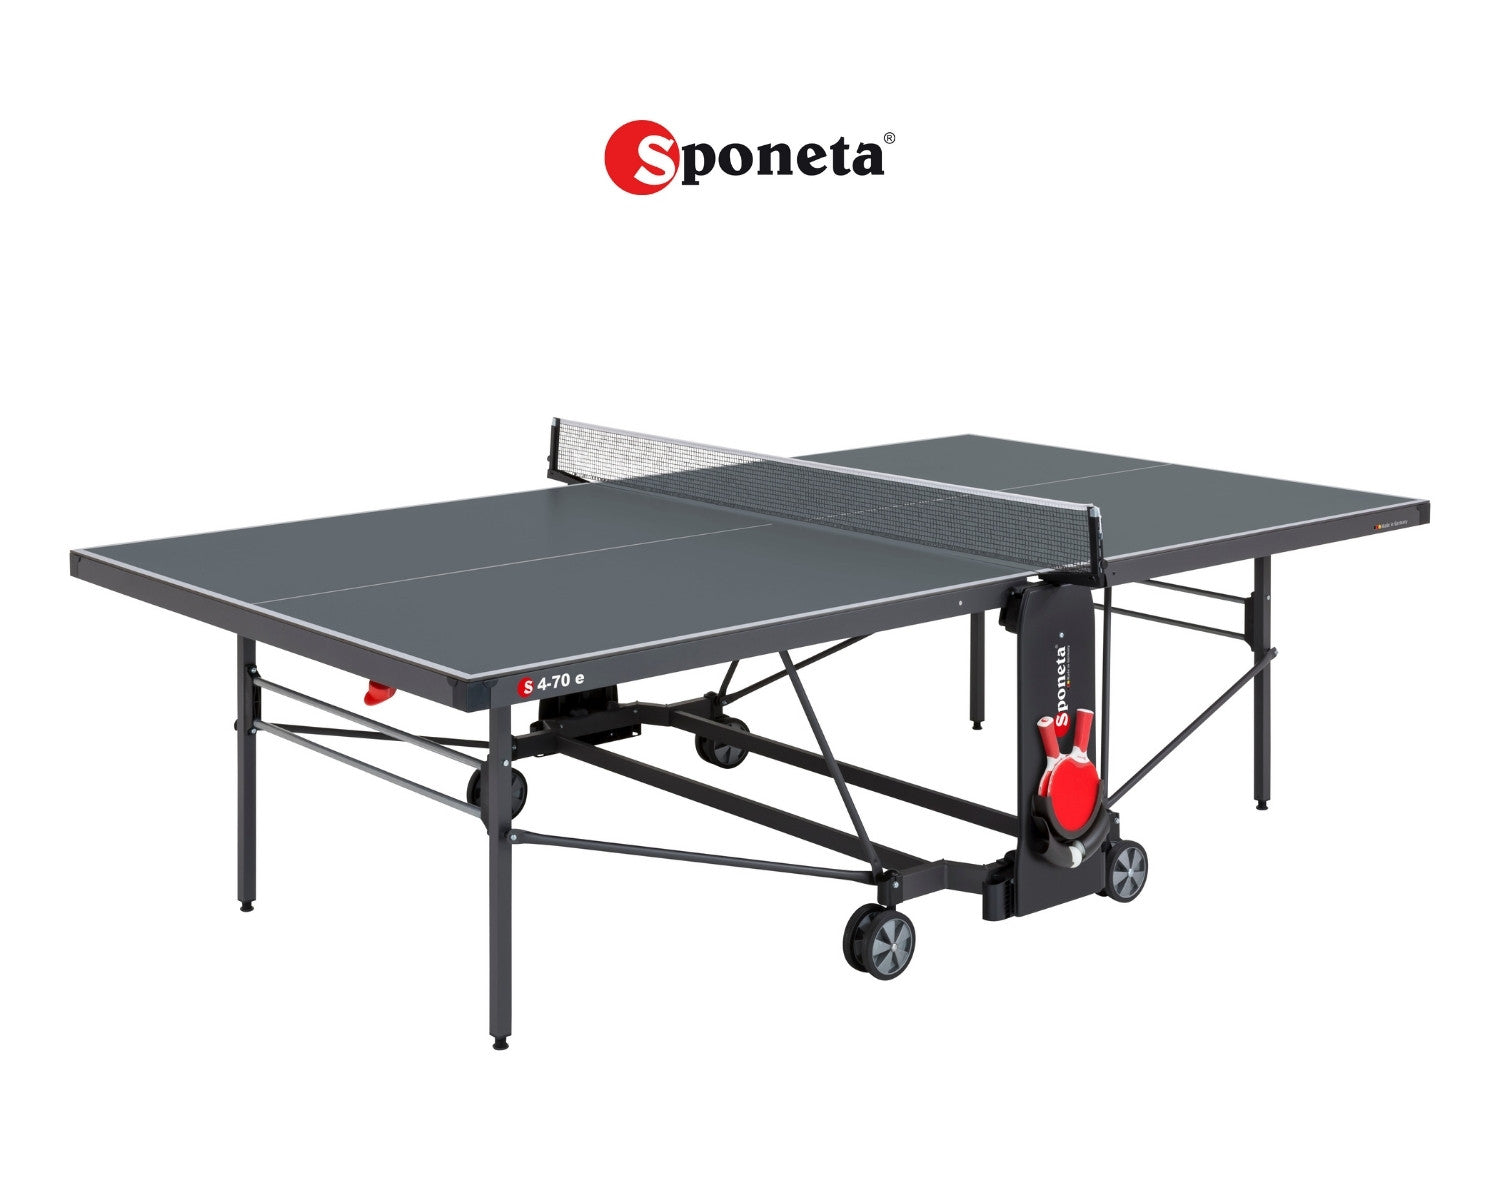 Sponeta Outdoor Tischtennistisch S 4-70 e